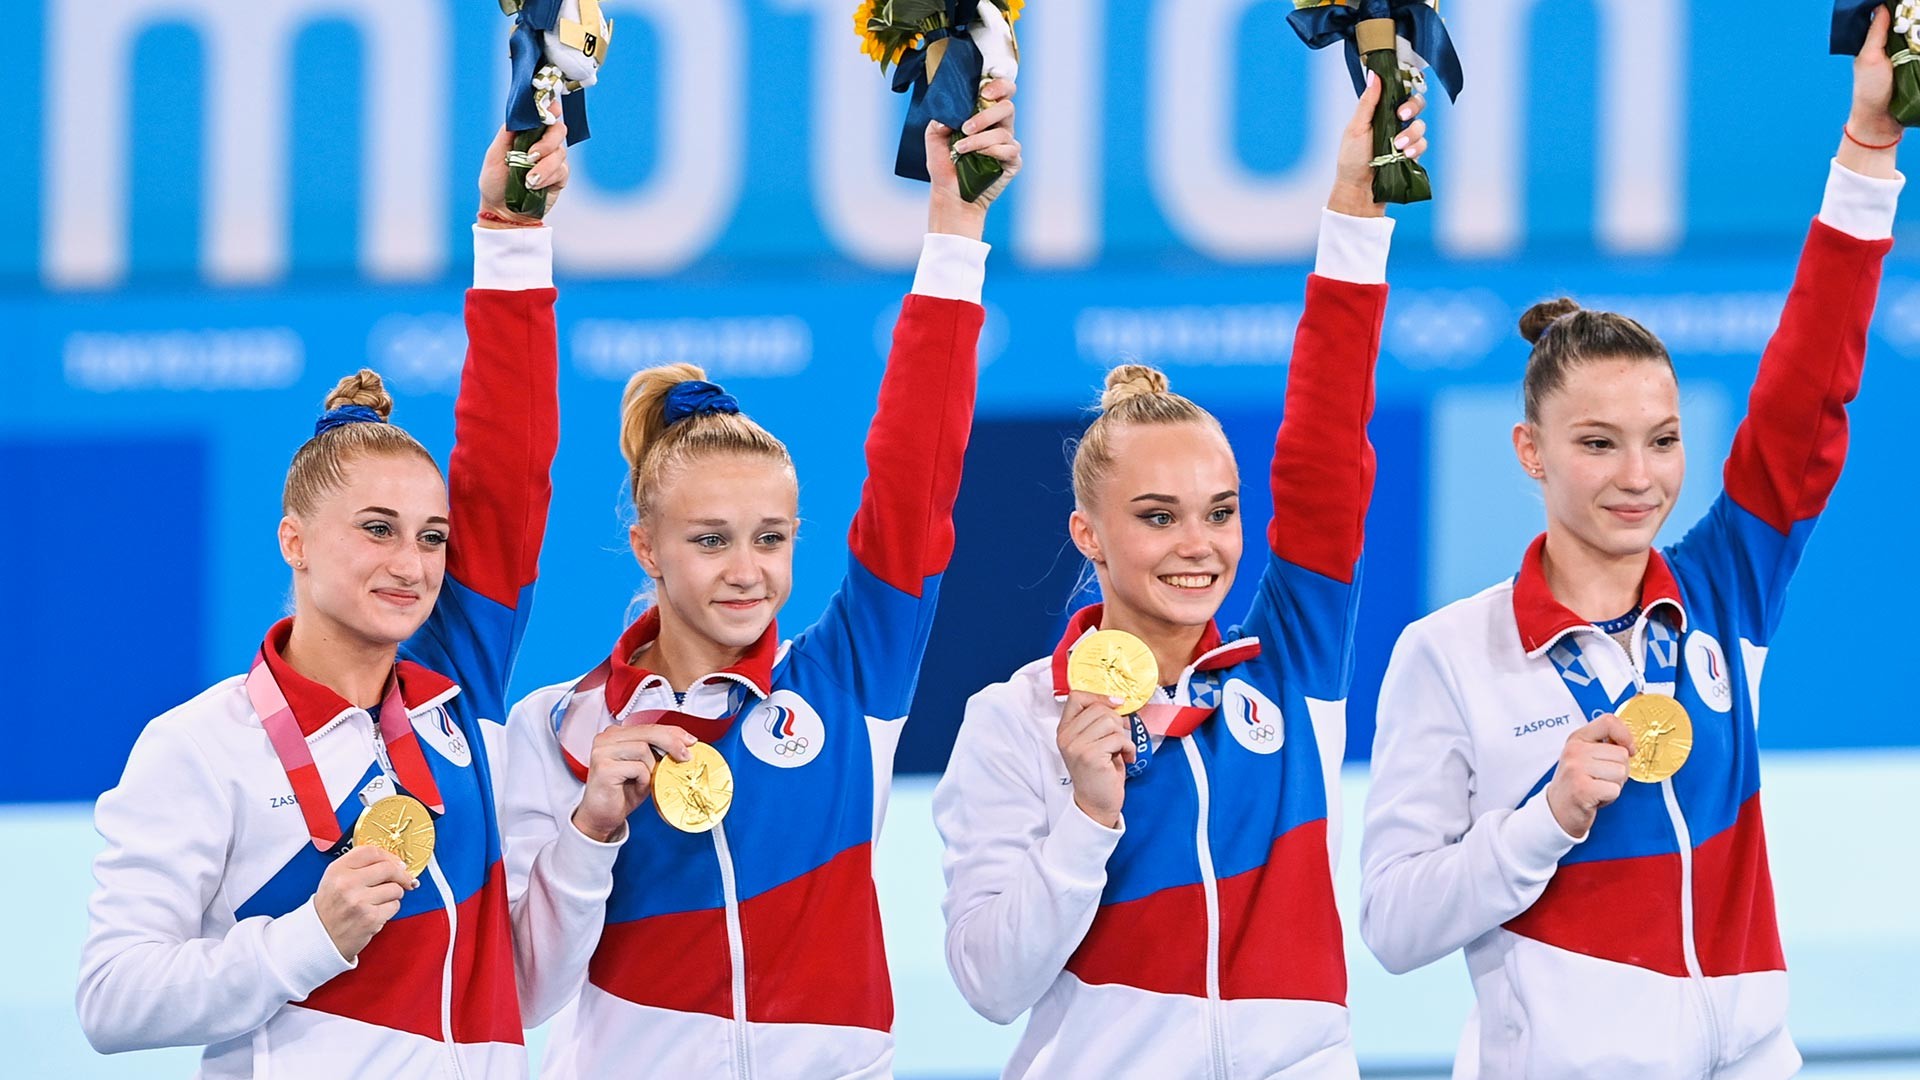 Sur la photo de gauche à droite: les médaillées d'or de la compétition finale par équipes féminines de gymnastique artistique aux Jeux olympiques de Tokyo 2020 Liliia Akhaimova, Viktoriia Listunova, Angelina Melnikova et Vladislava Urazova